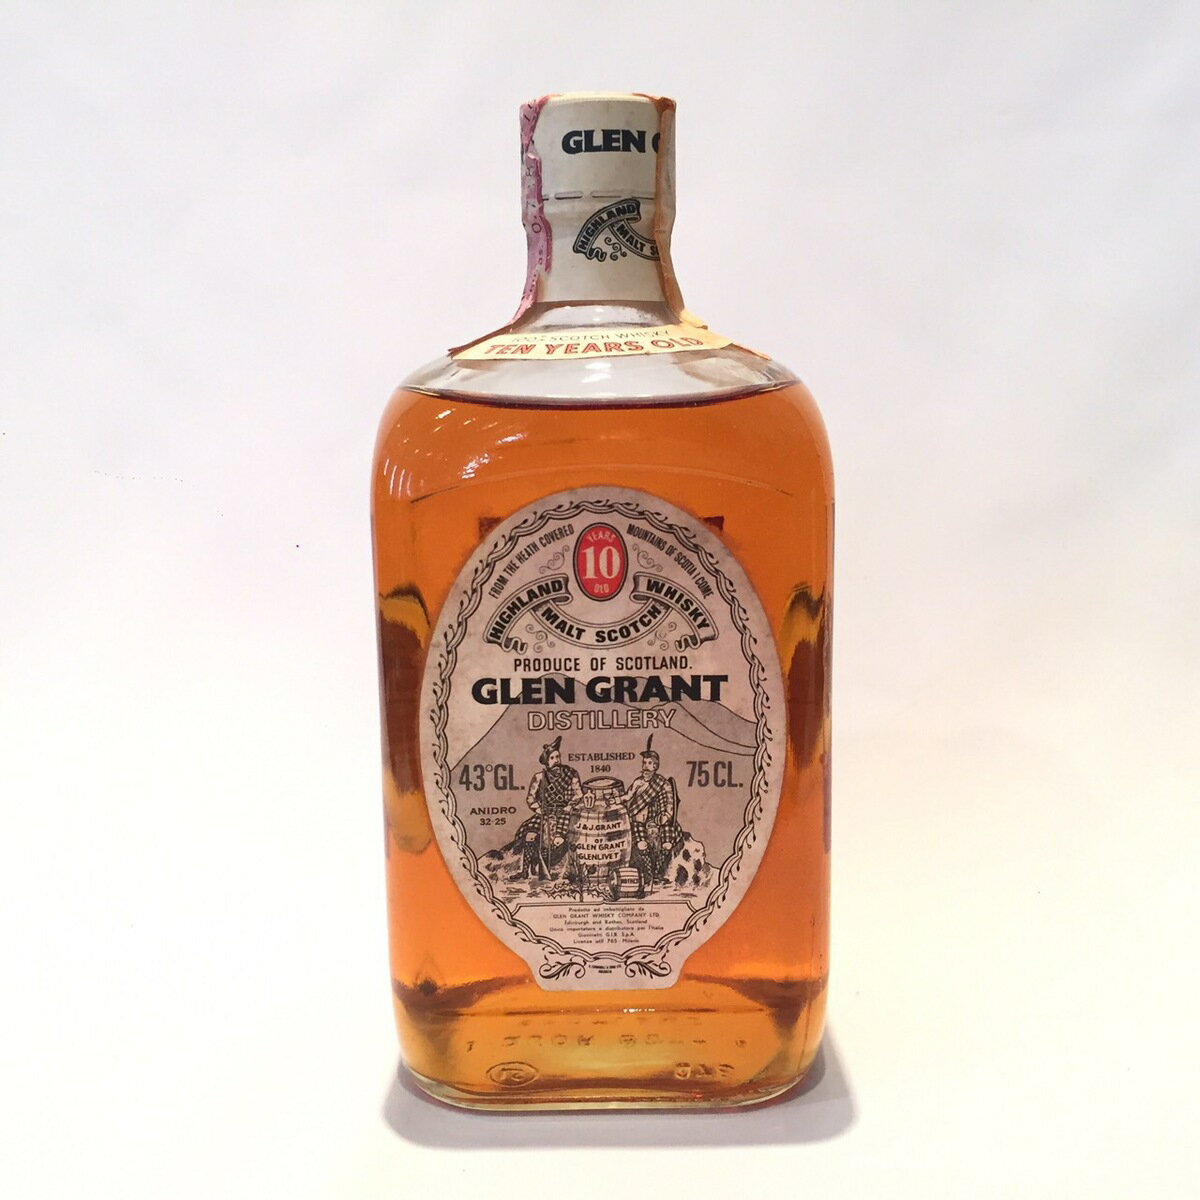 OOg Glen Grant Original Bottling 10 Years old 43 GL. / 75 CL. black box Giovinetti G.I.B.-S.p.A.